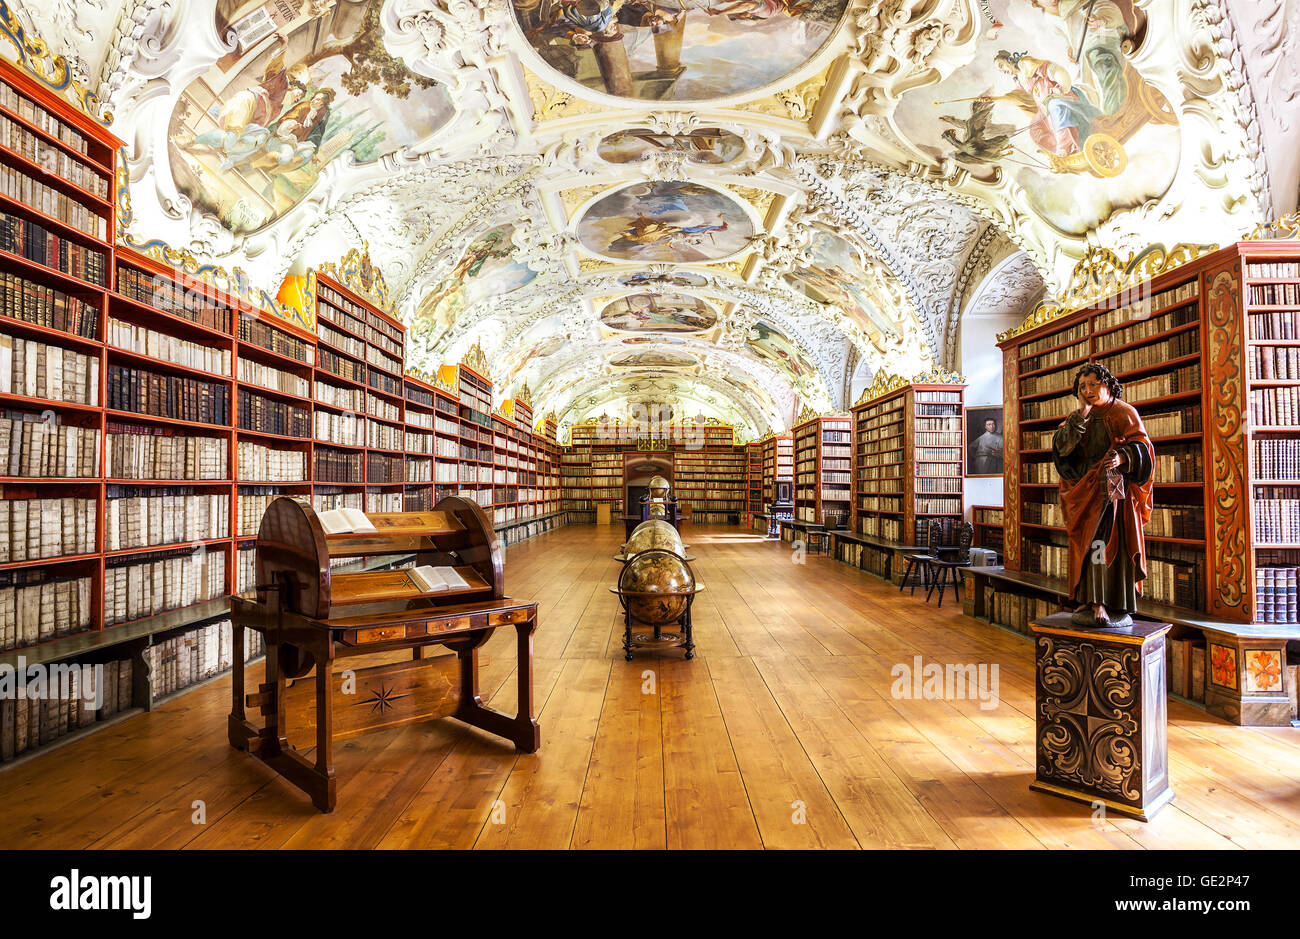 Prag, Tschechische Republik - 15. Juni 2014: die theologische Hall in Strahov Kloster in Prag, einer der schönsten Bibliothek Innenräume Stockfoto